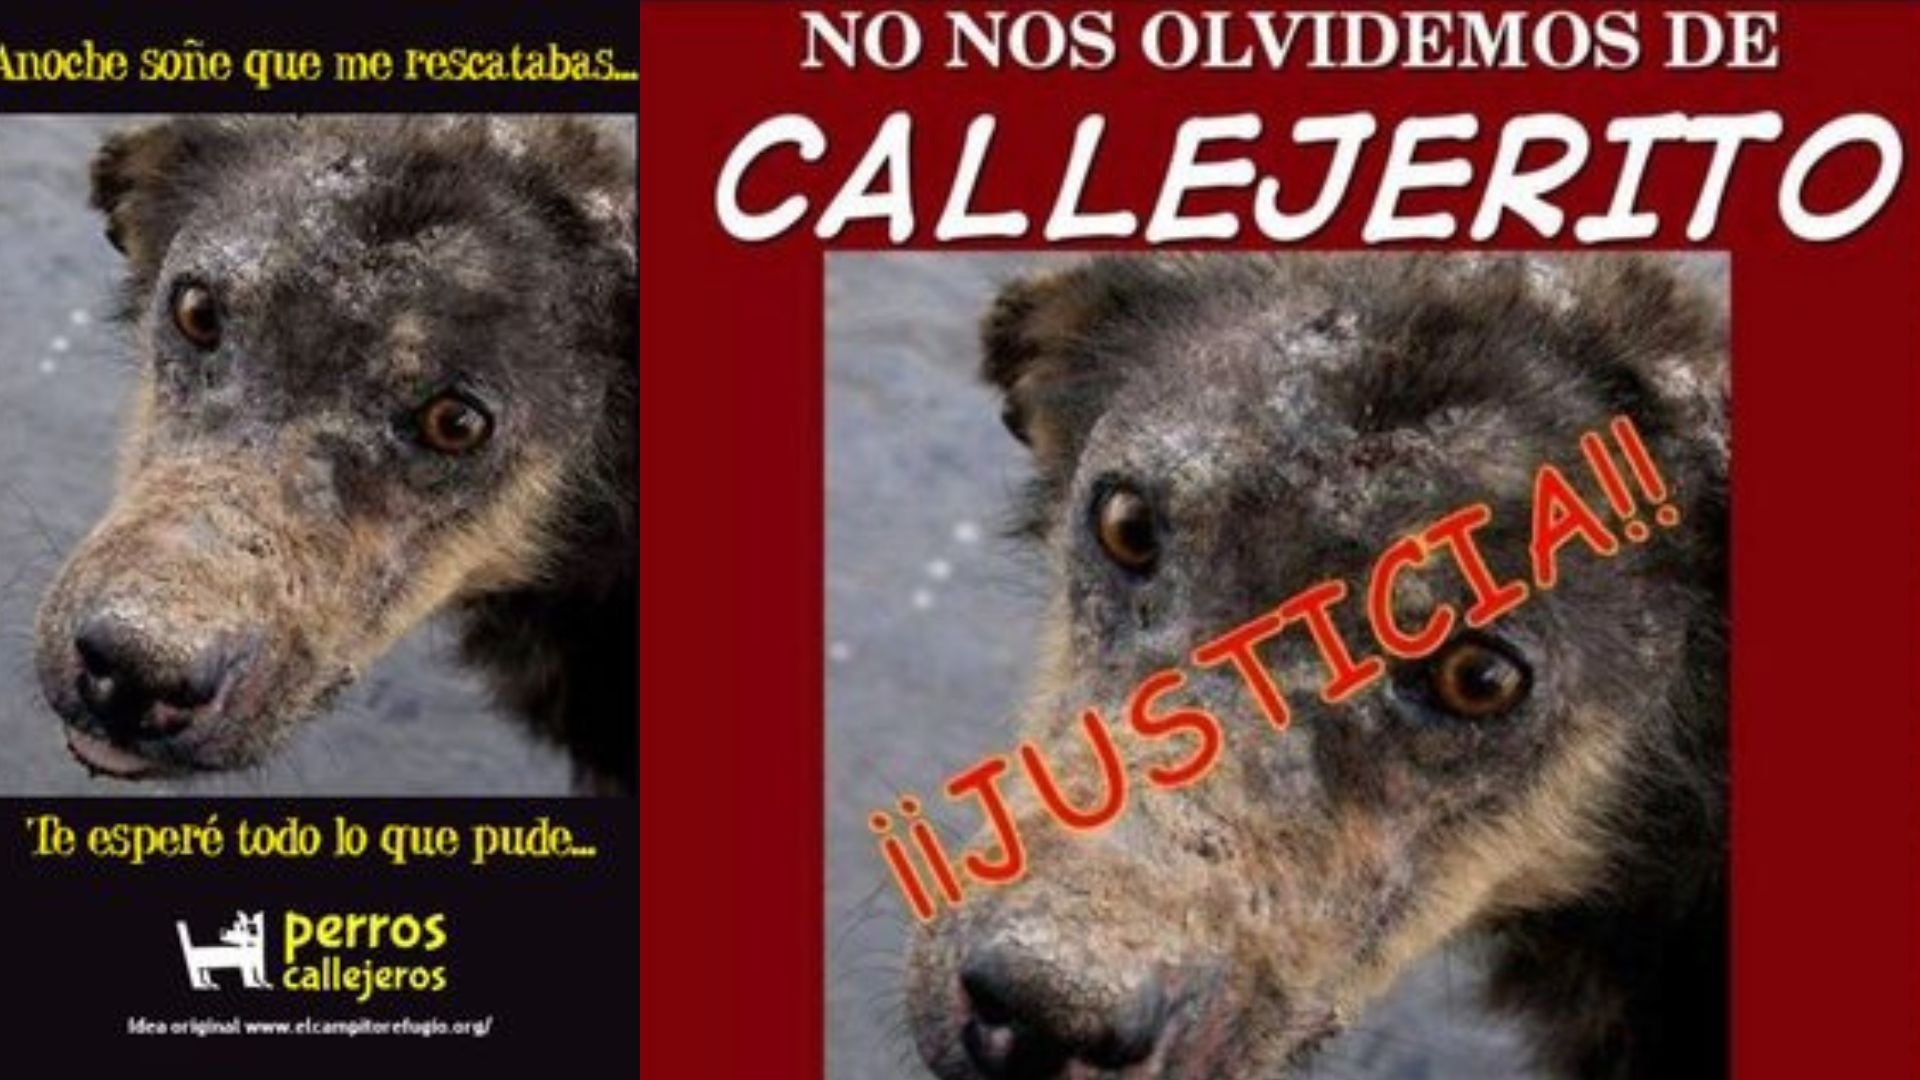 El caso de Callejerito, el crimen que ayudó a penalizar el maltrato animal en la CDMX